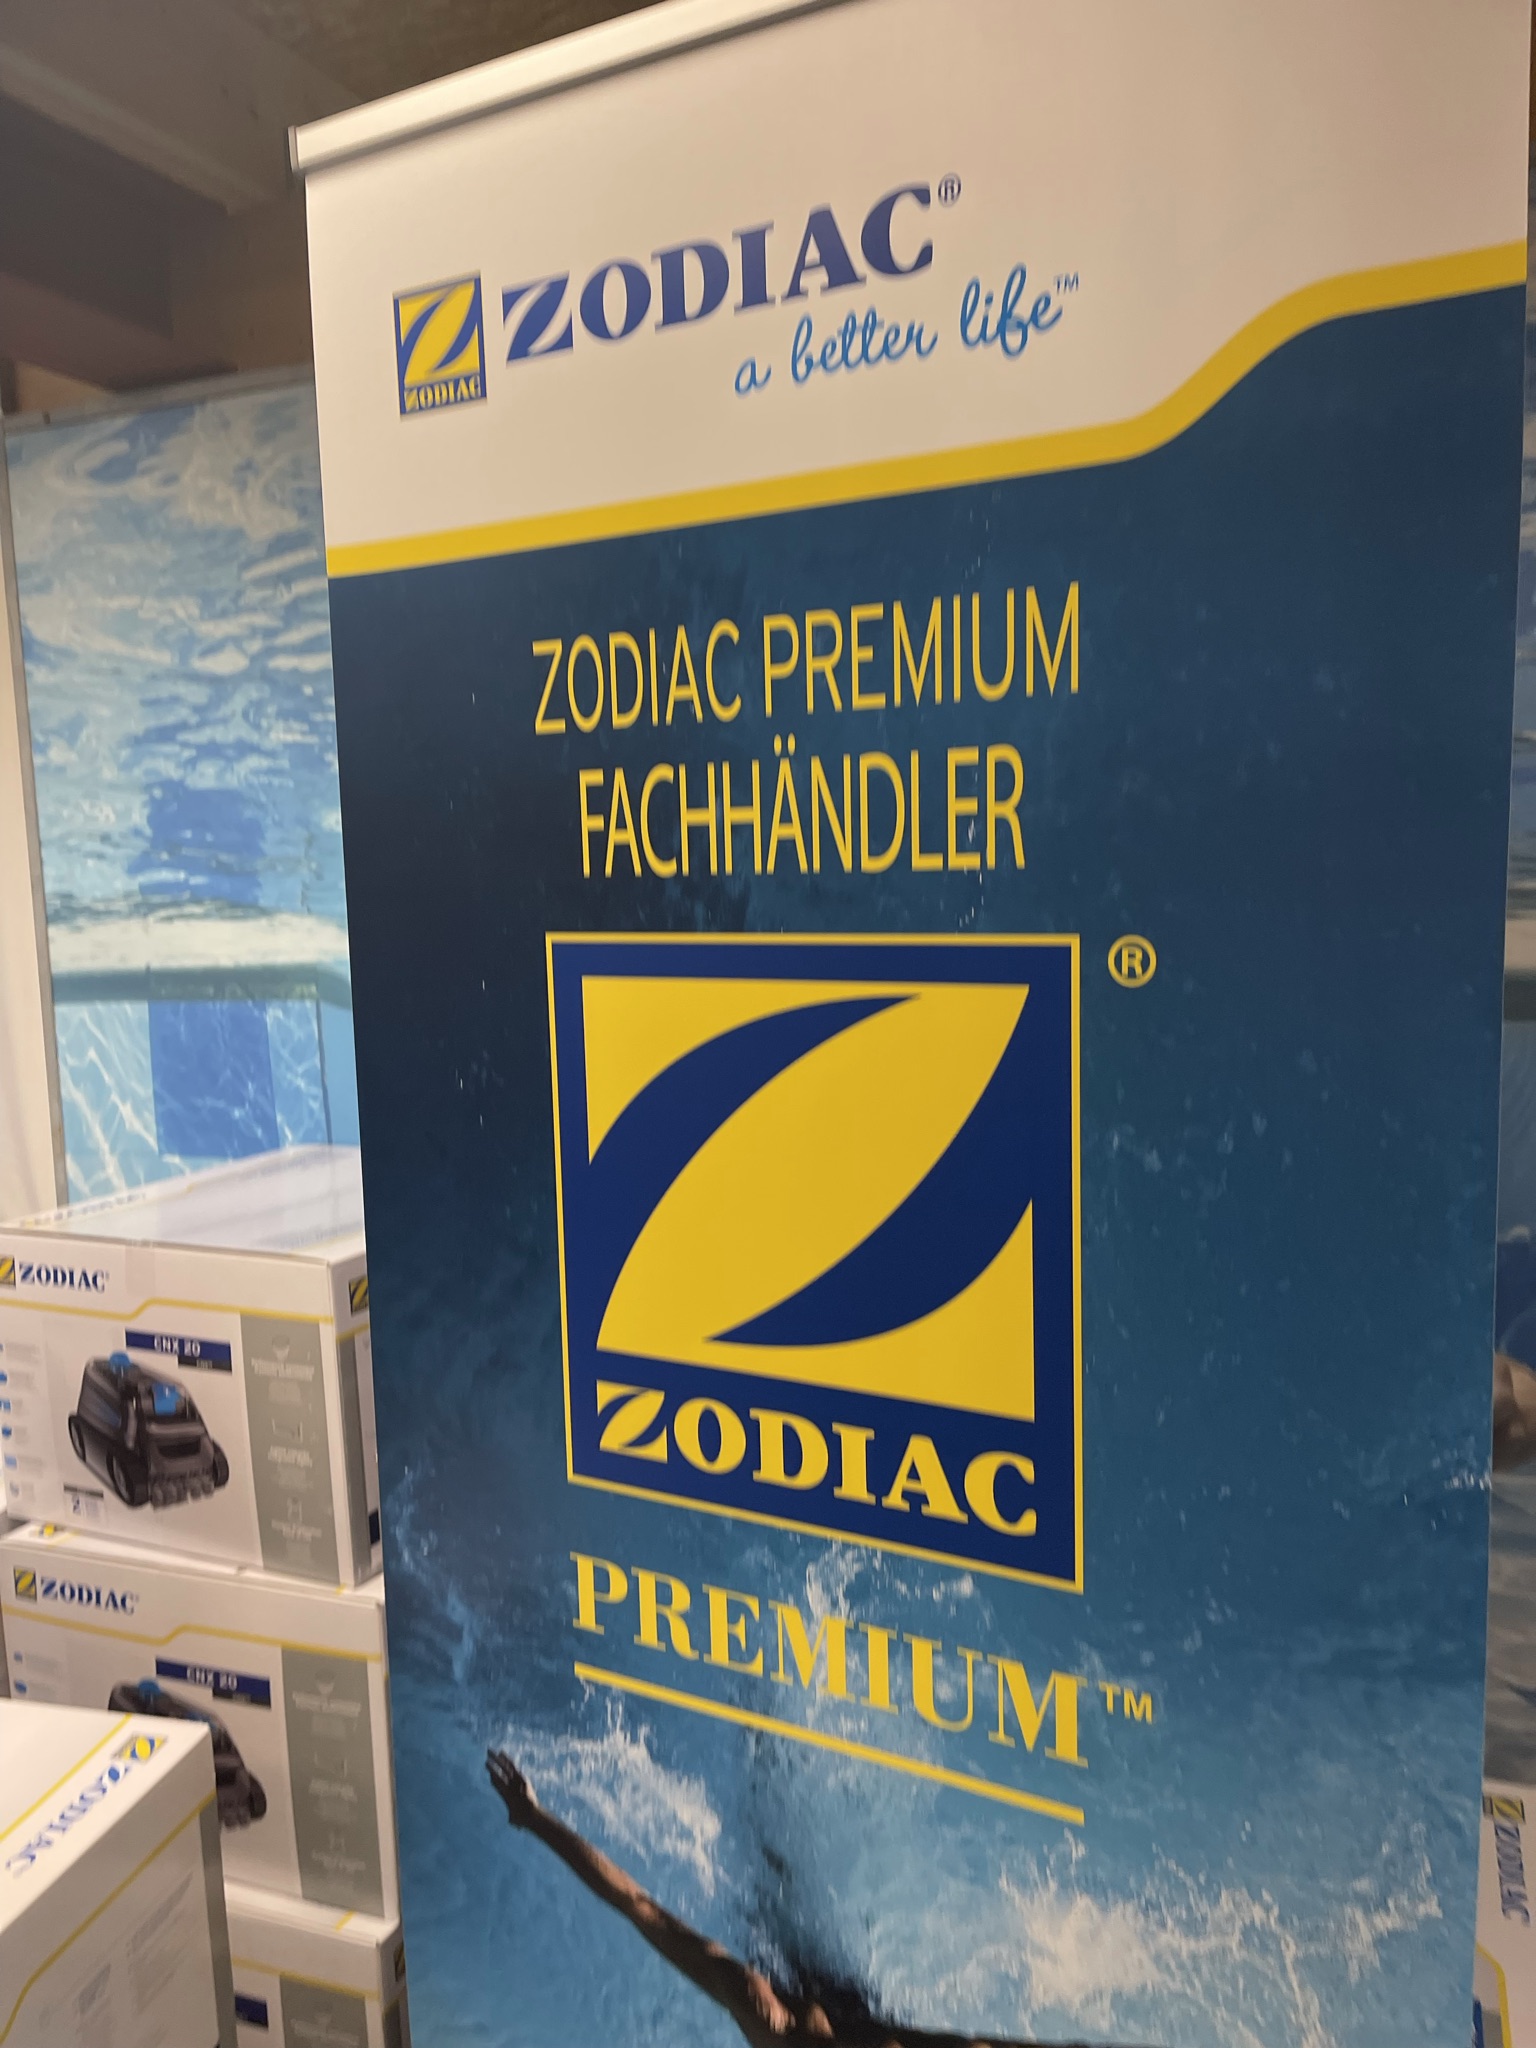 Zodiac Premium Partner